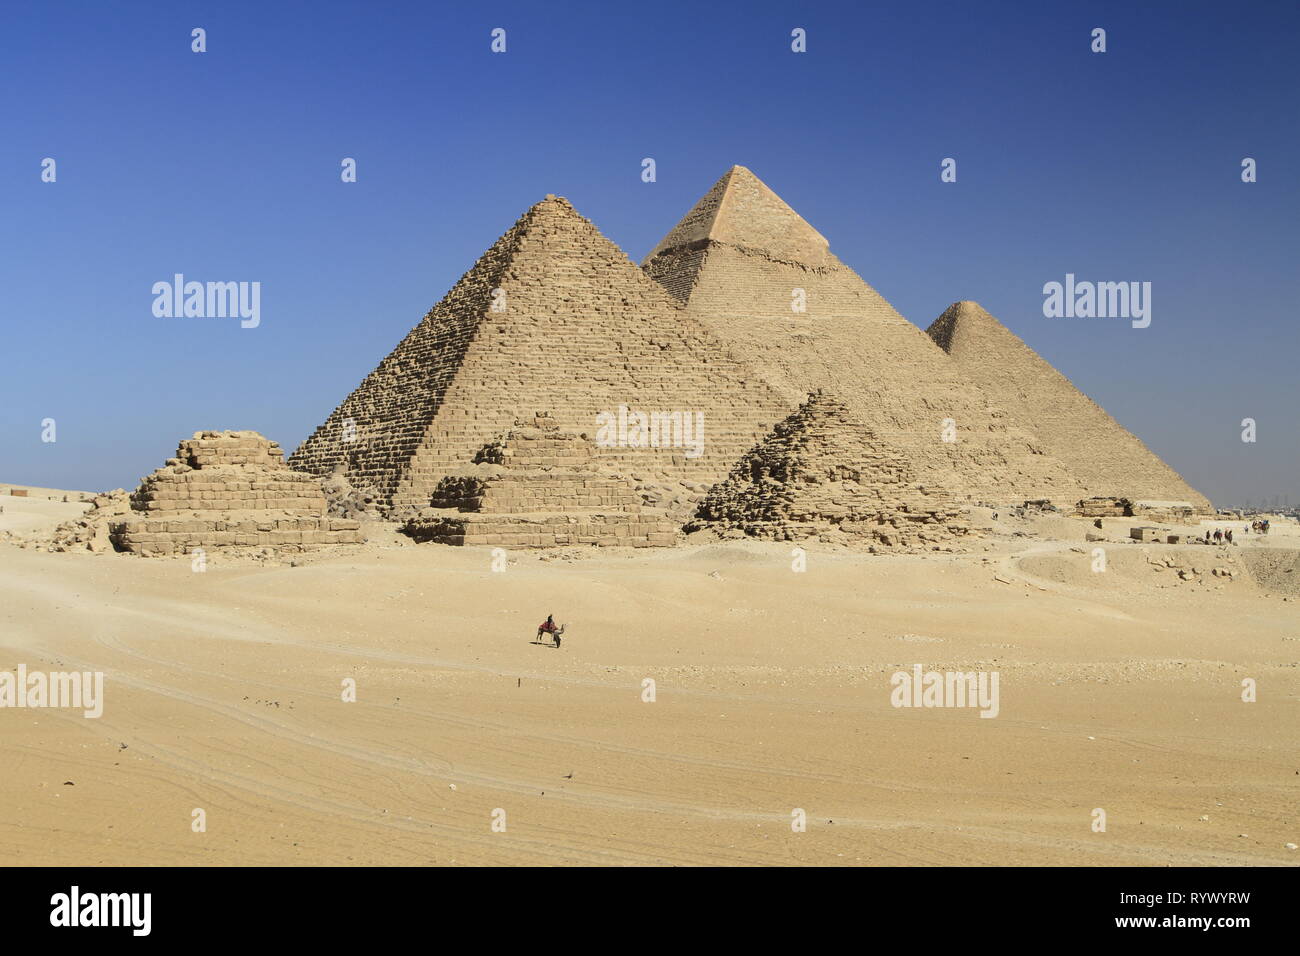 Pyramide de Gizeh, Karnak temple complexe, Giza, Le Caire, Egypte Banque D'Images